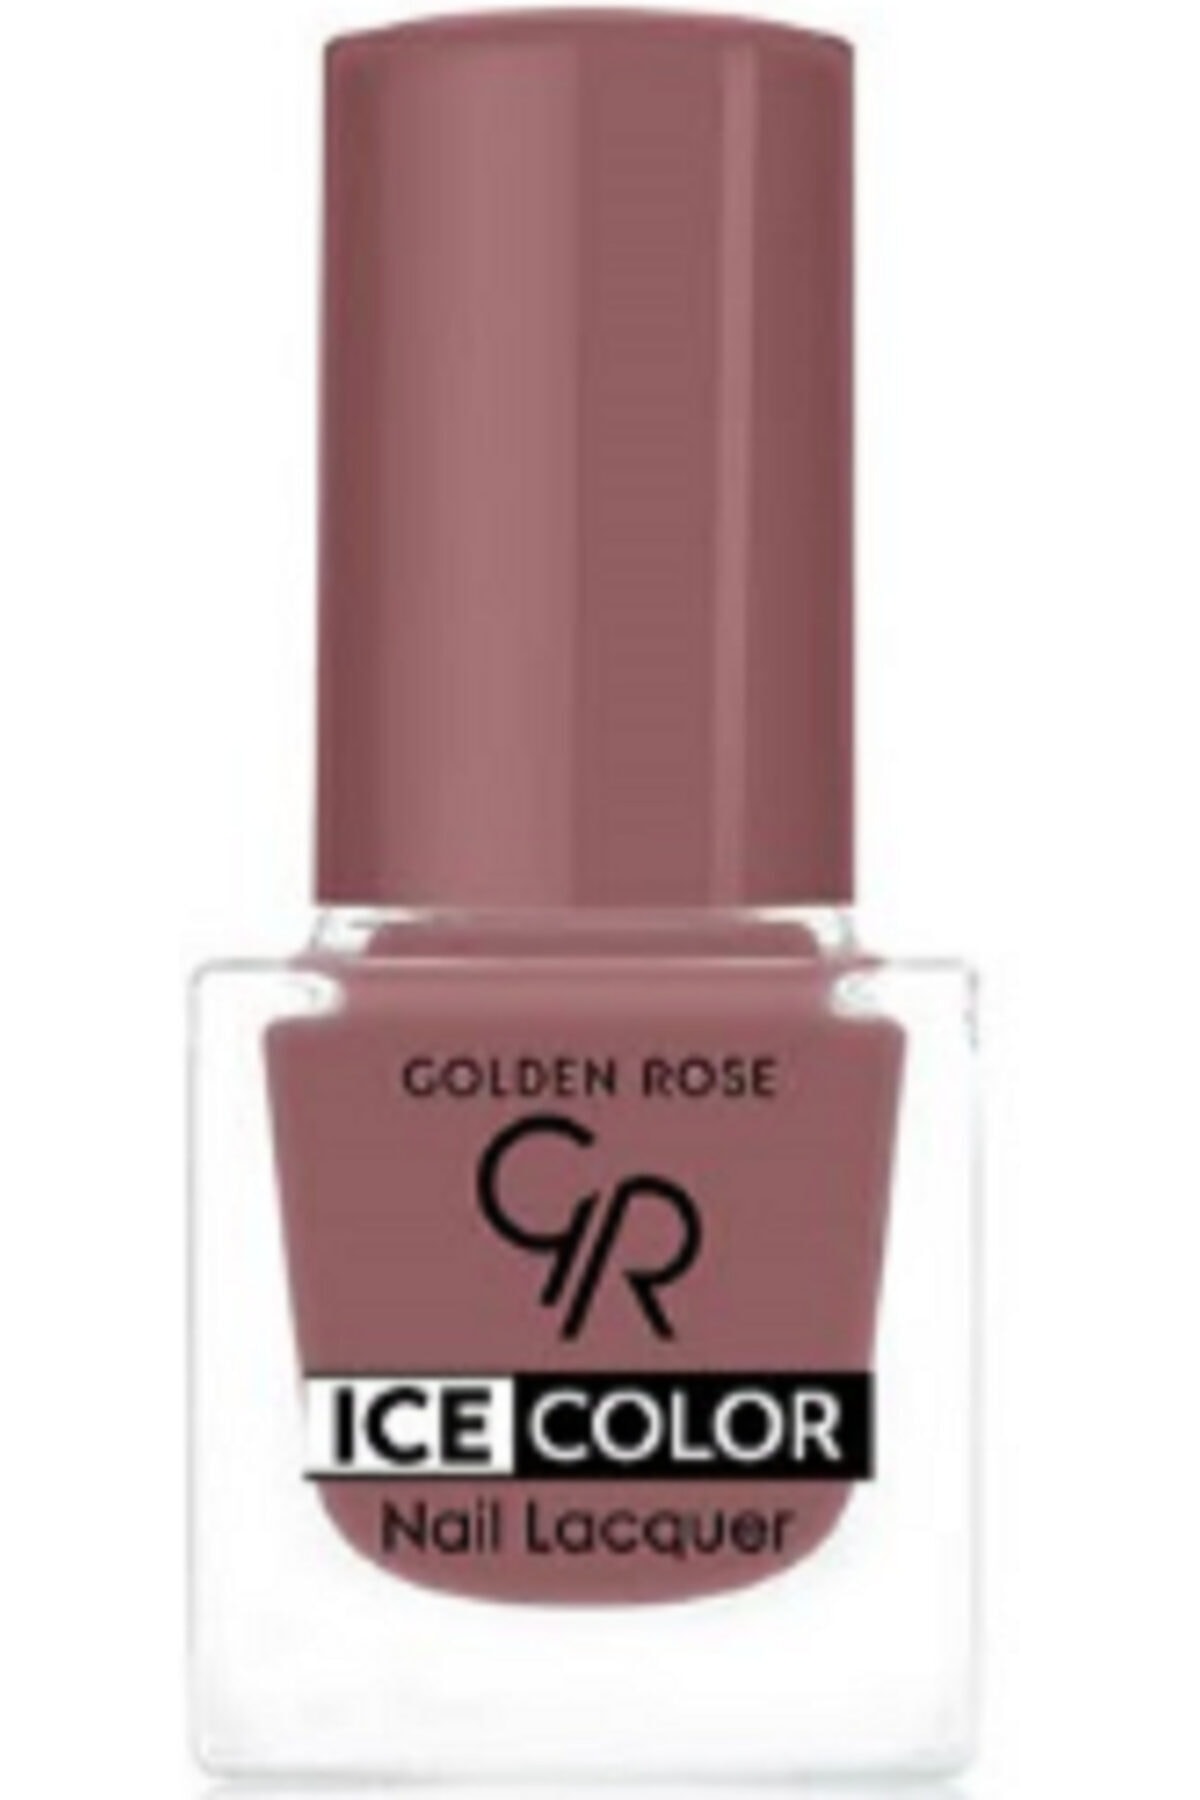 لاک ناخن یخی آیس چیک ICE شماره 201 رنگ صورتی گلدن رز Golden Rose